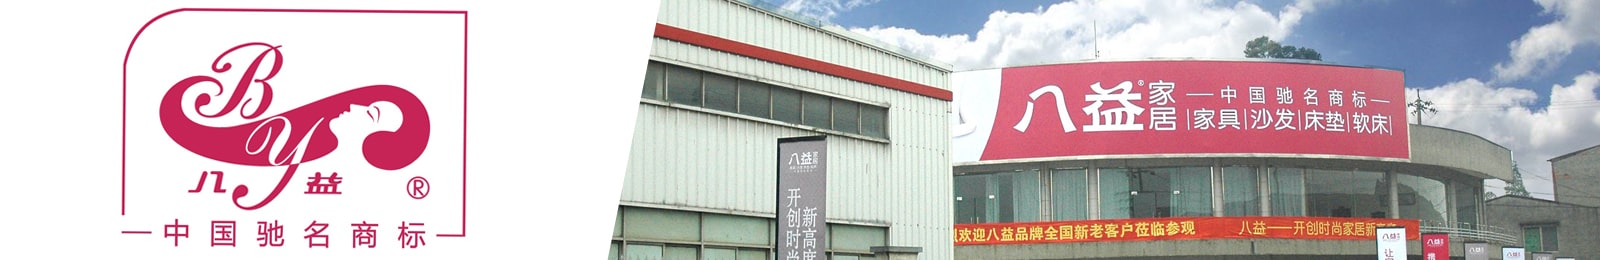 Chengdu Bayi Furniture Group Co., Ltd.